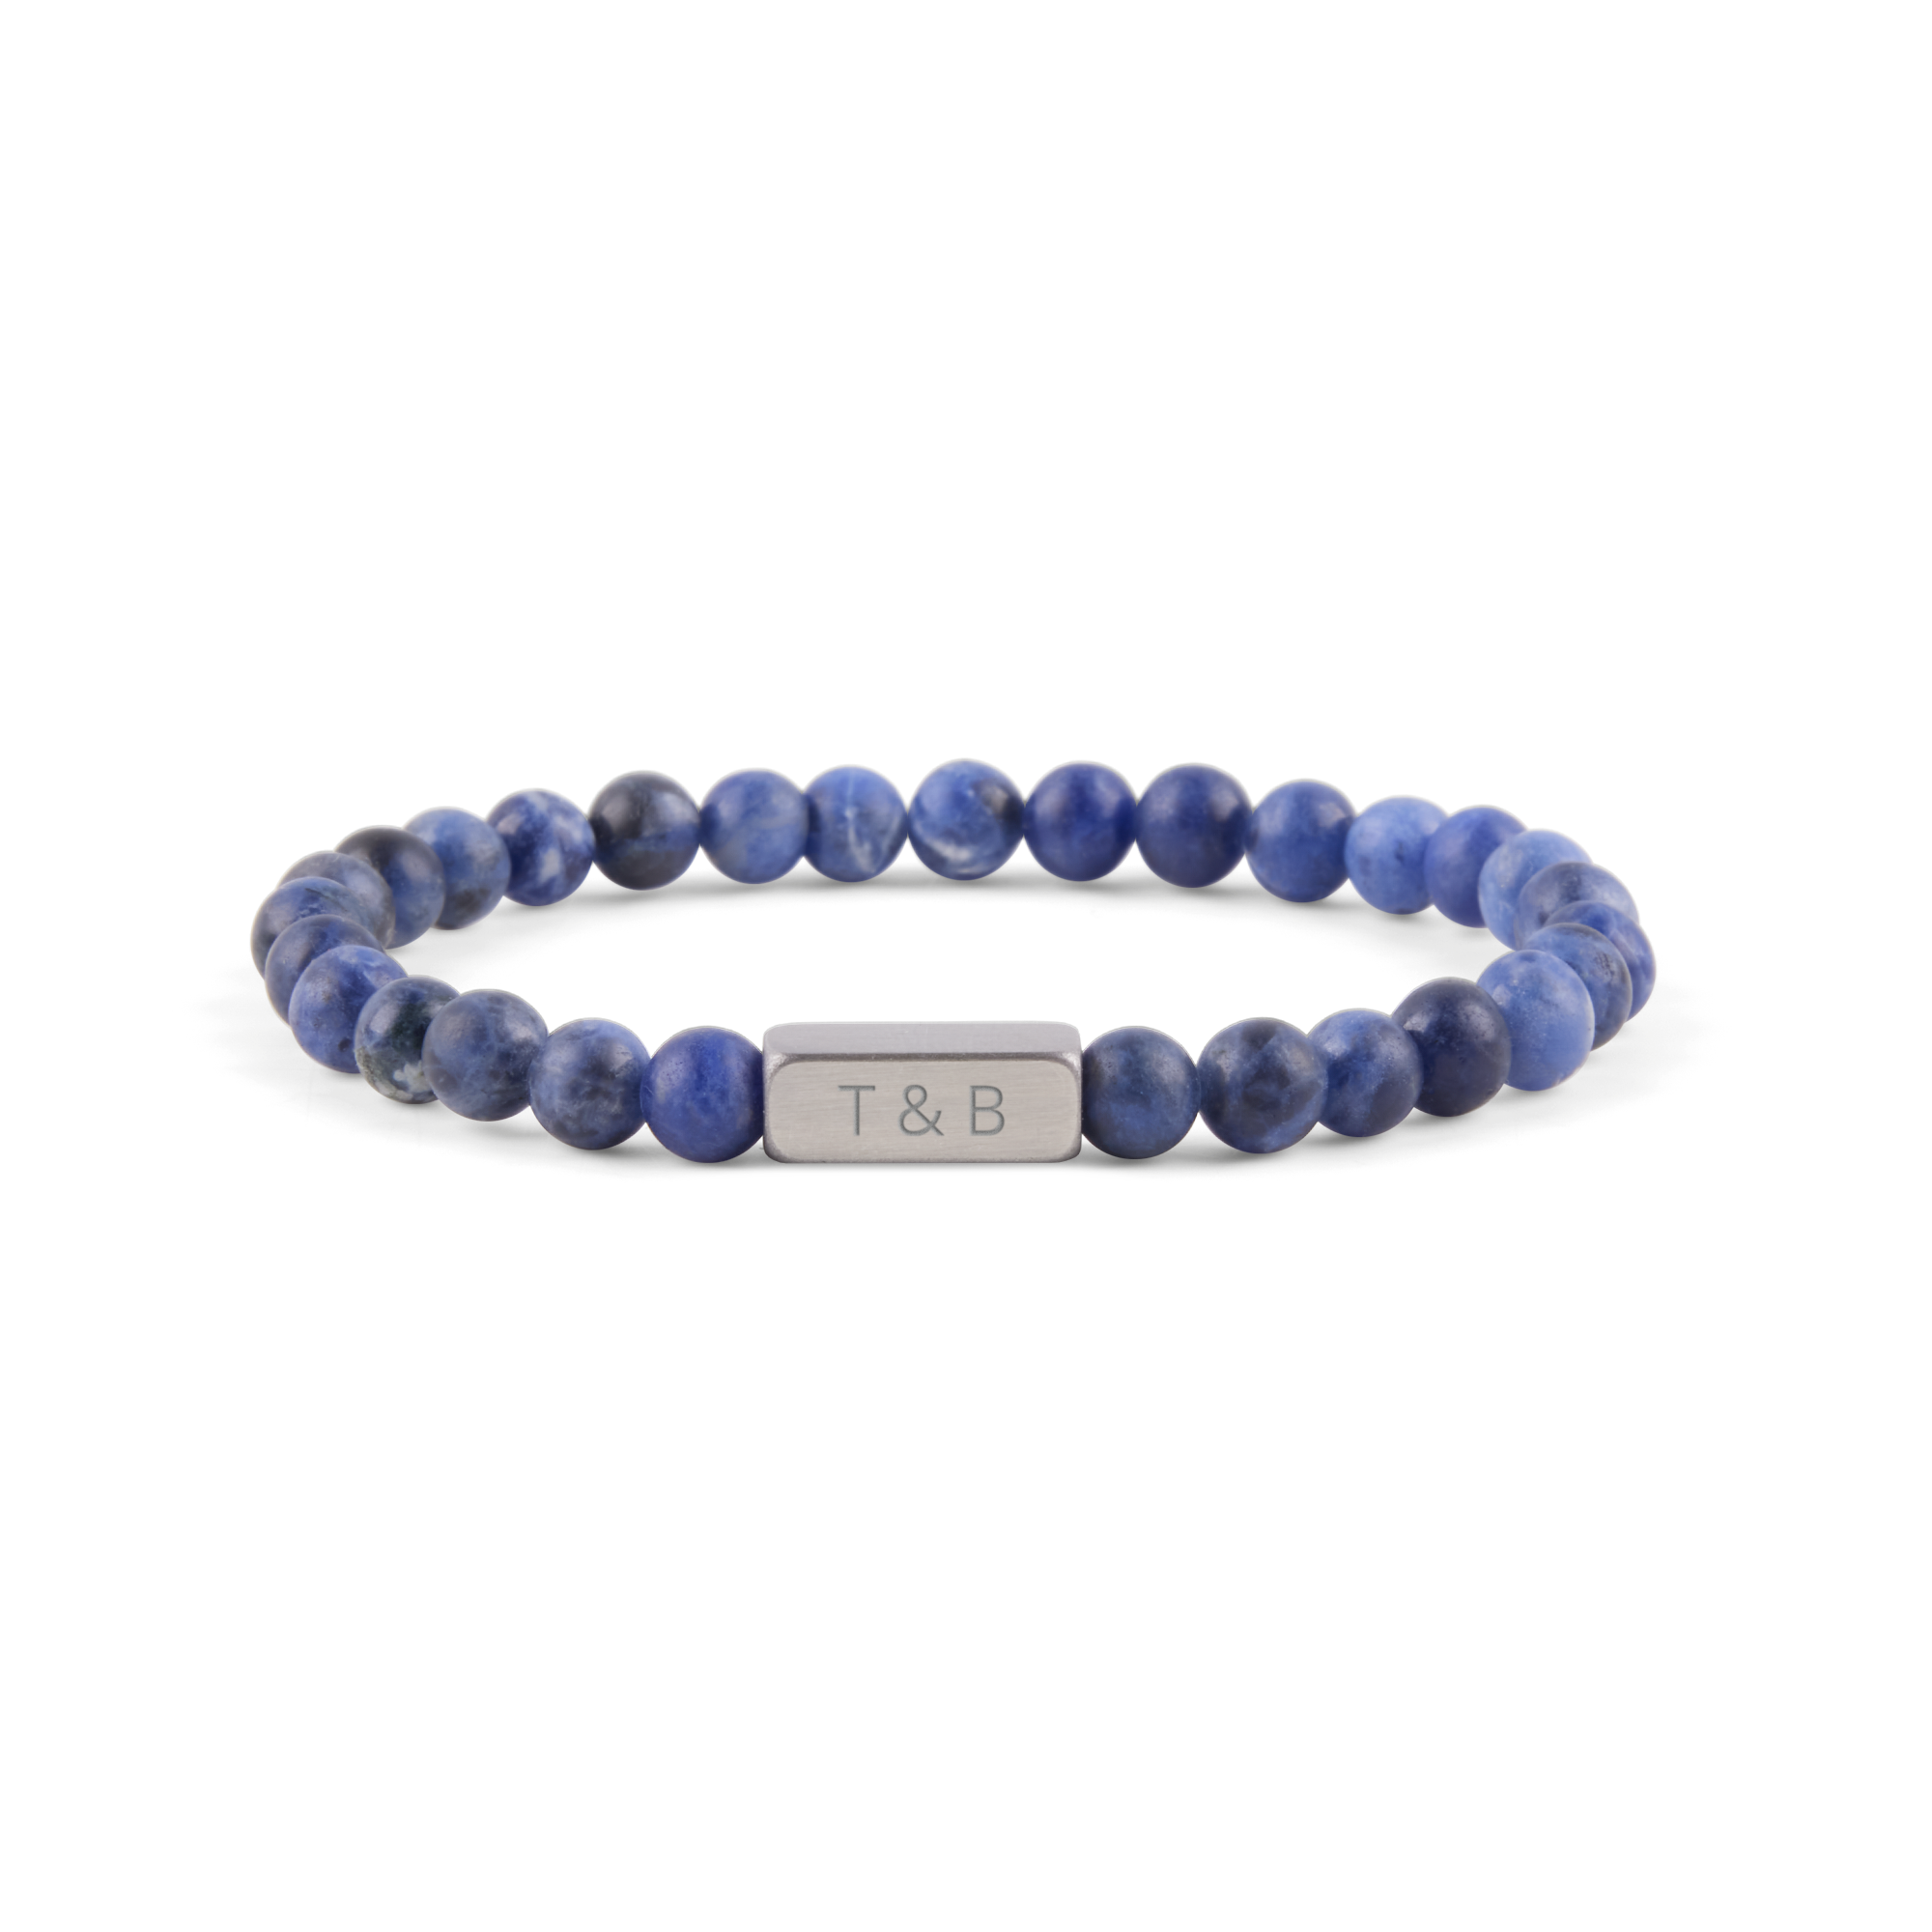 Personalised gemstone bracelet - Blue - S